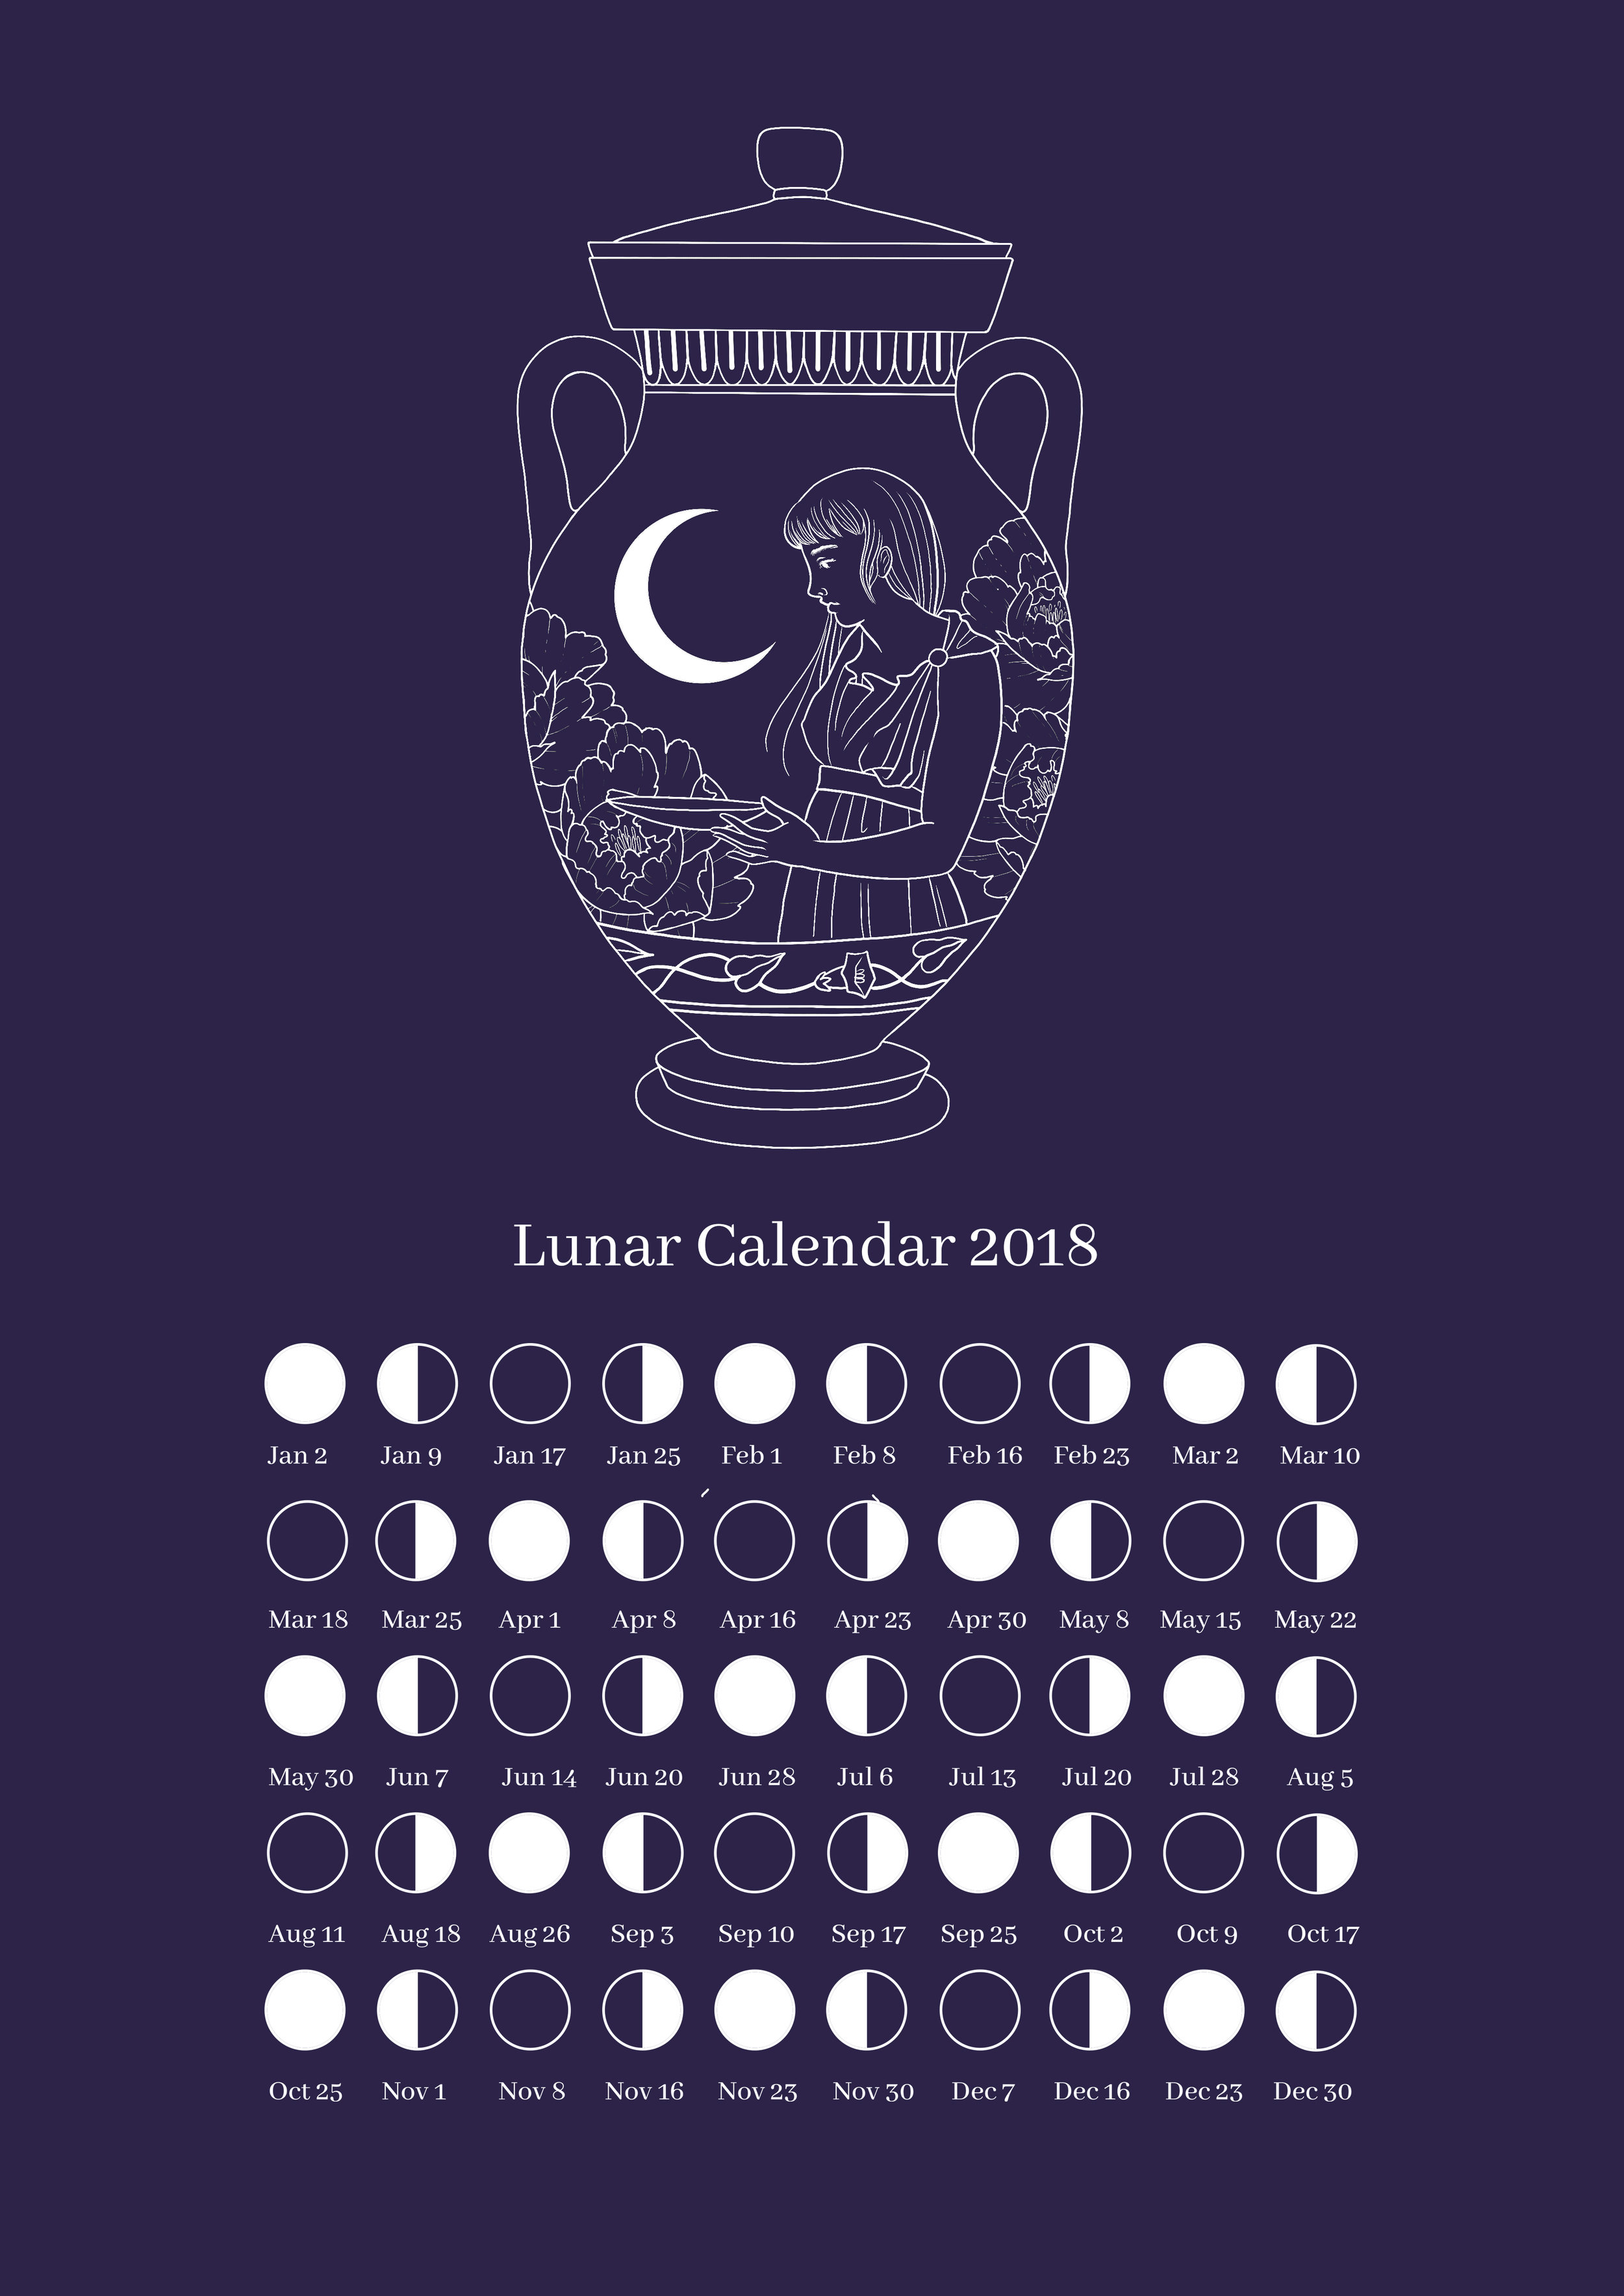 Lunar calendar 2018.jpg